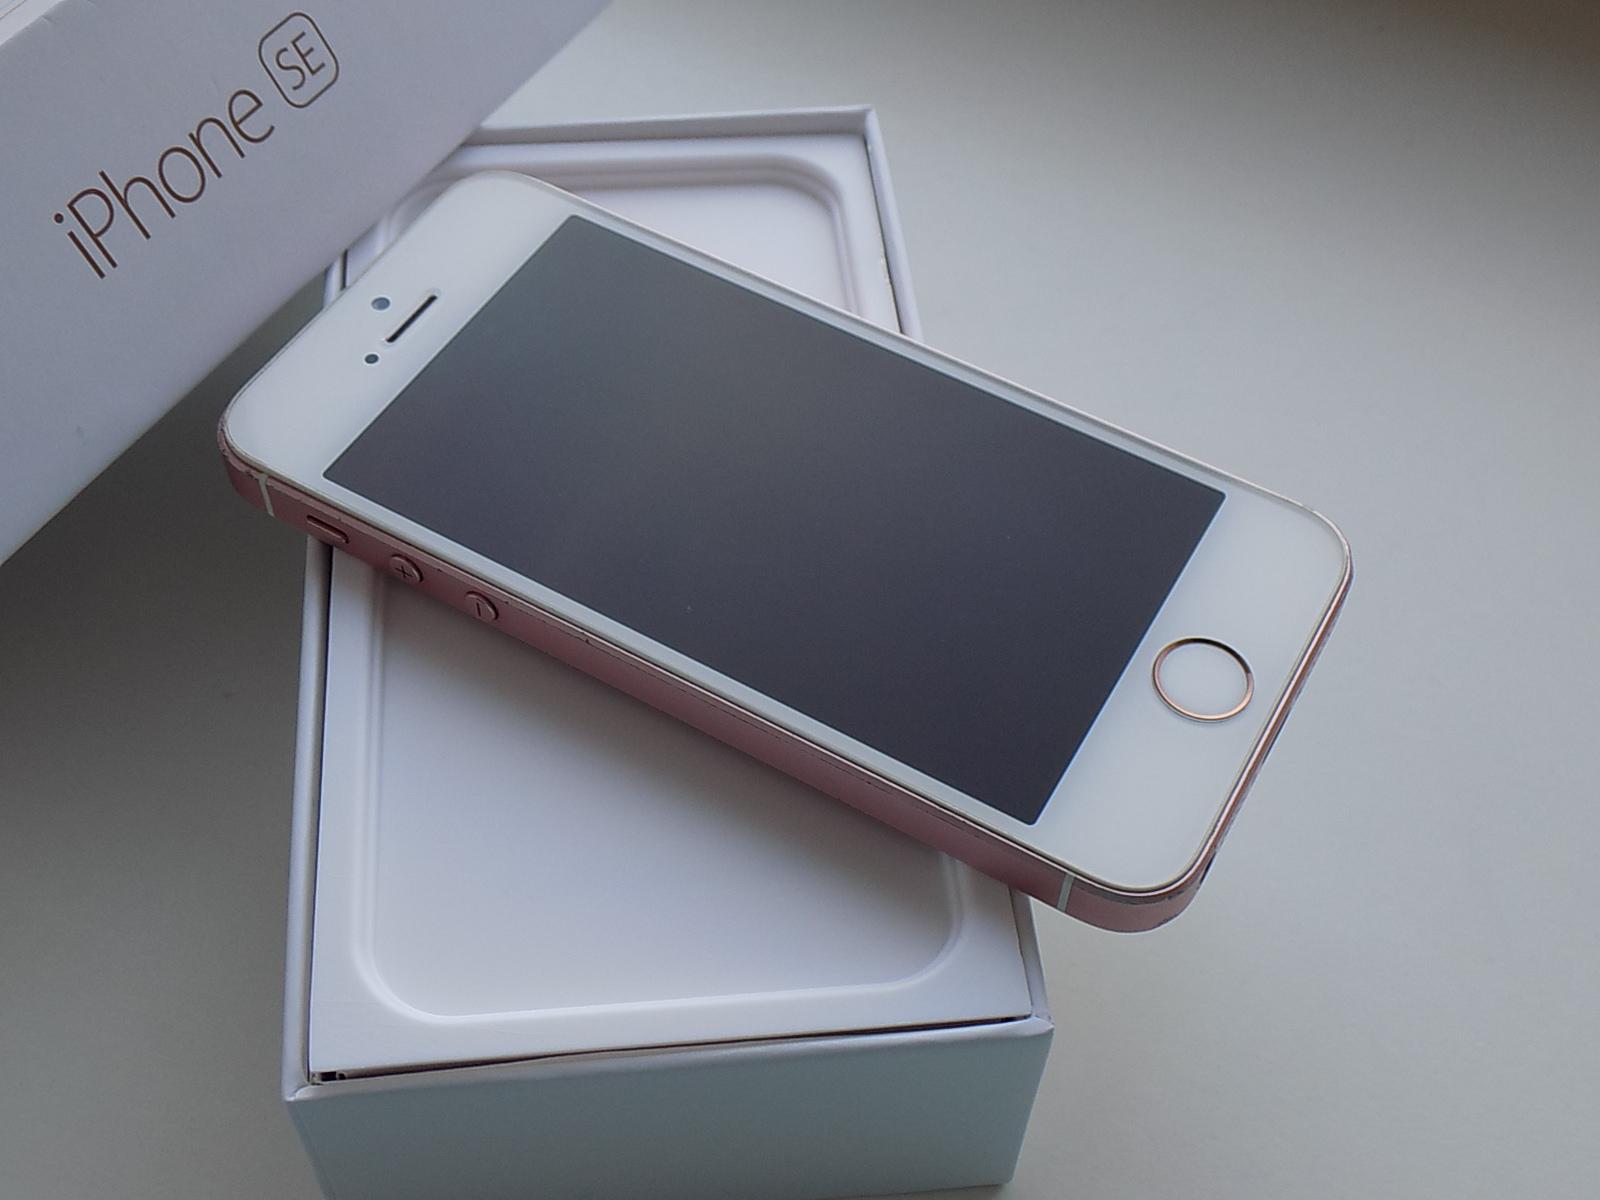 APPLE iPhone SE 32GB Rose Gold - KOMPLETNÍ BALENÍ - Mobily a chytrá elektronika